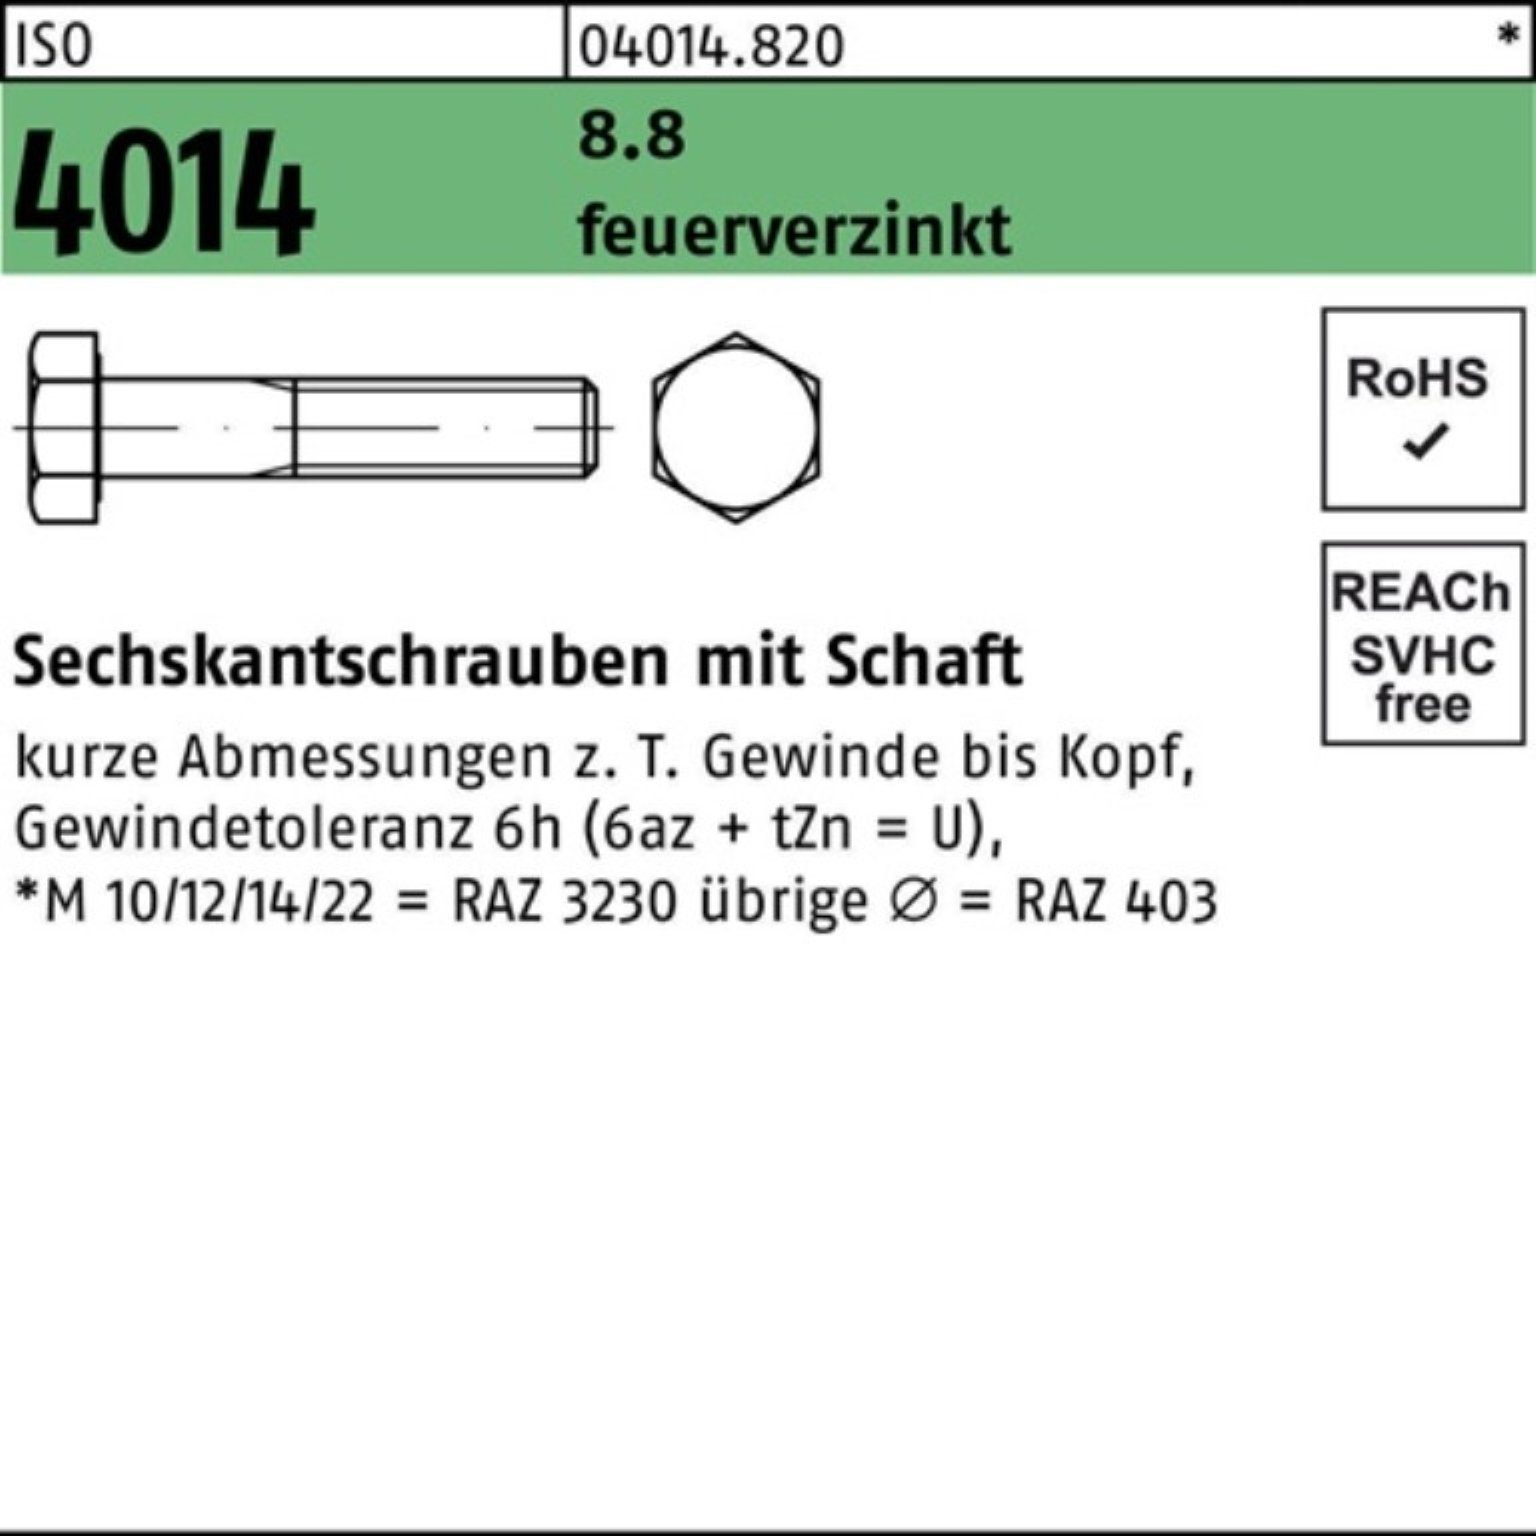 Bufab Sechskantschraube 100er ISO feuerverz. Schaft Sechskantschraube Pack 240 1 M30x 4014 8.8